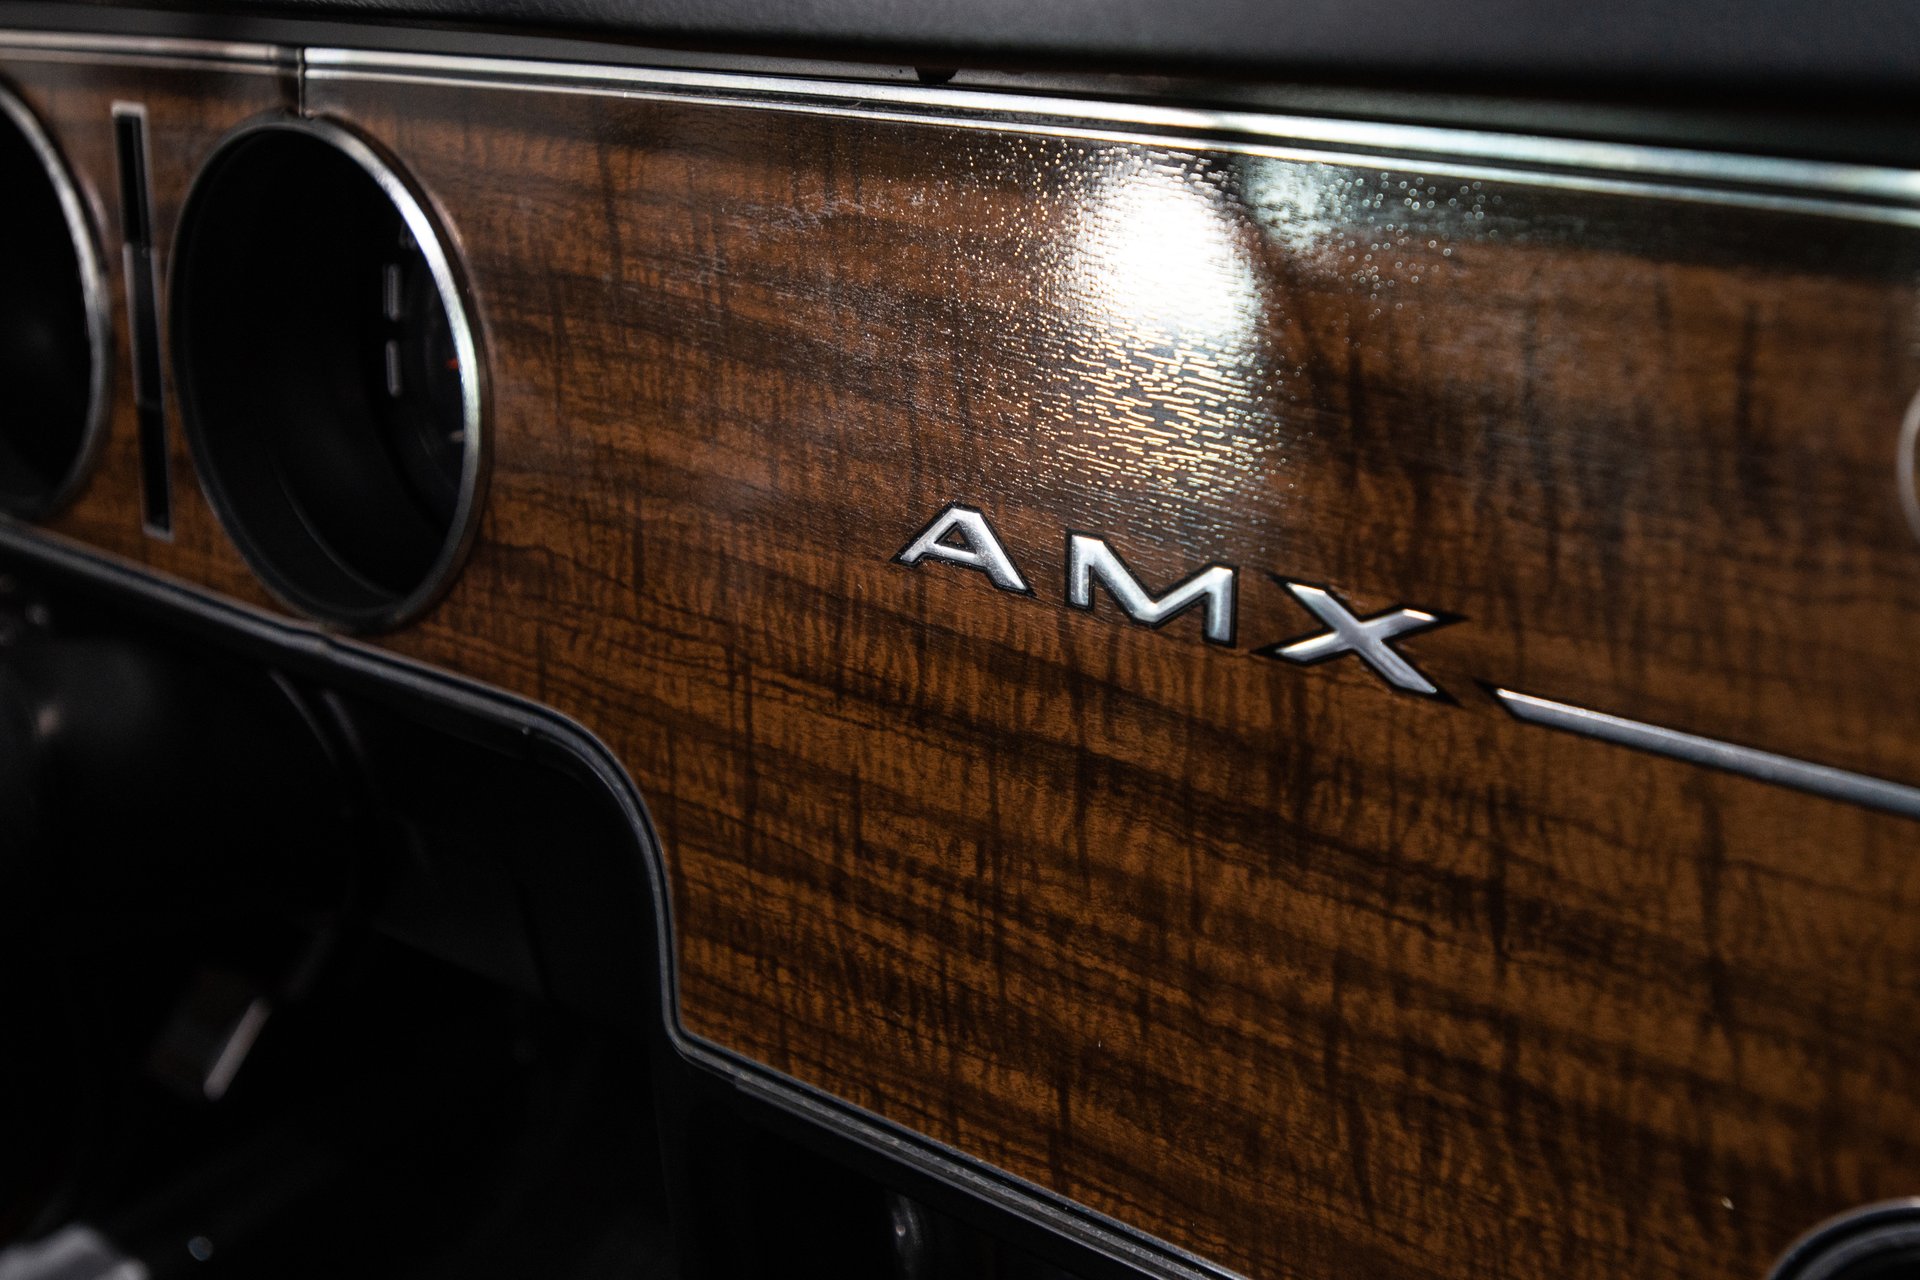 For Sale 1970 AMC AMX